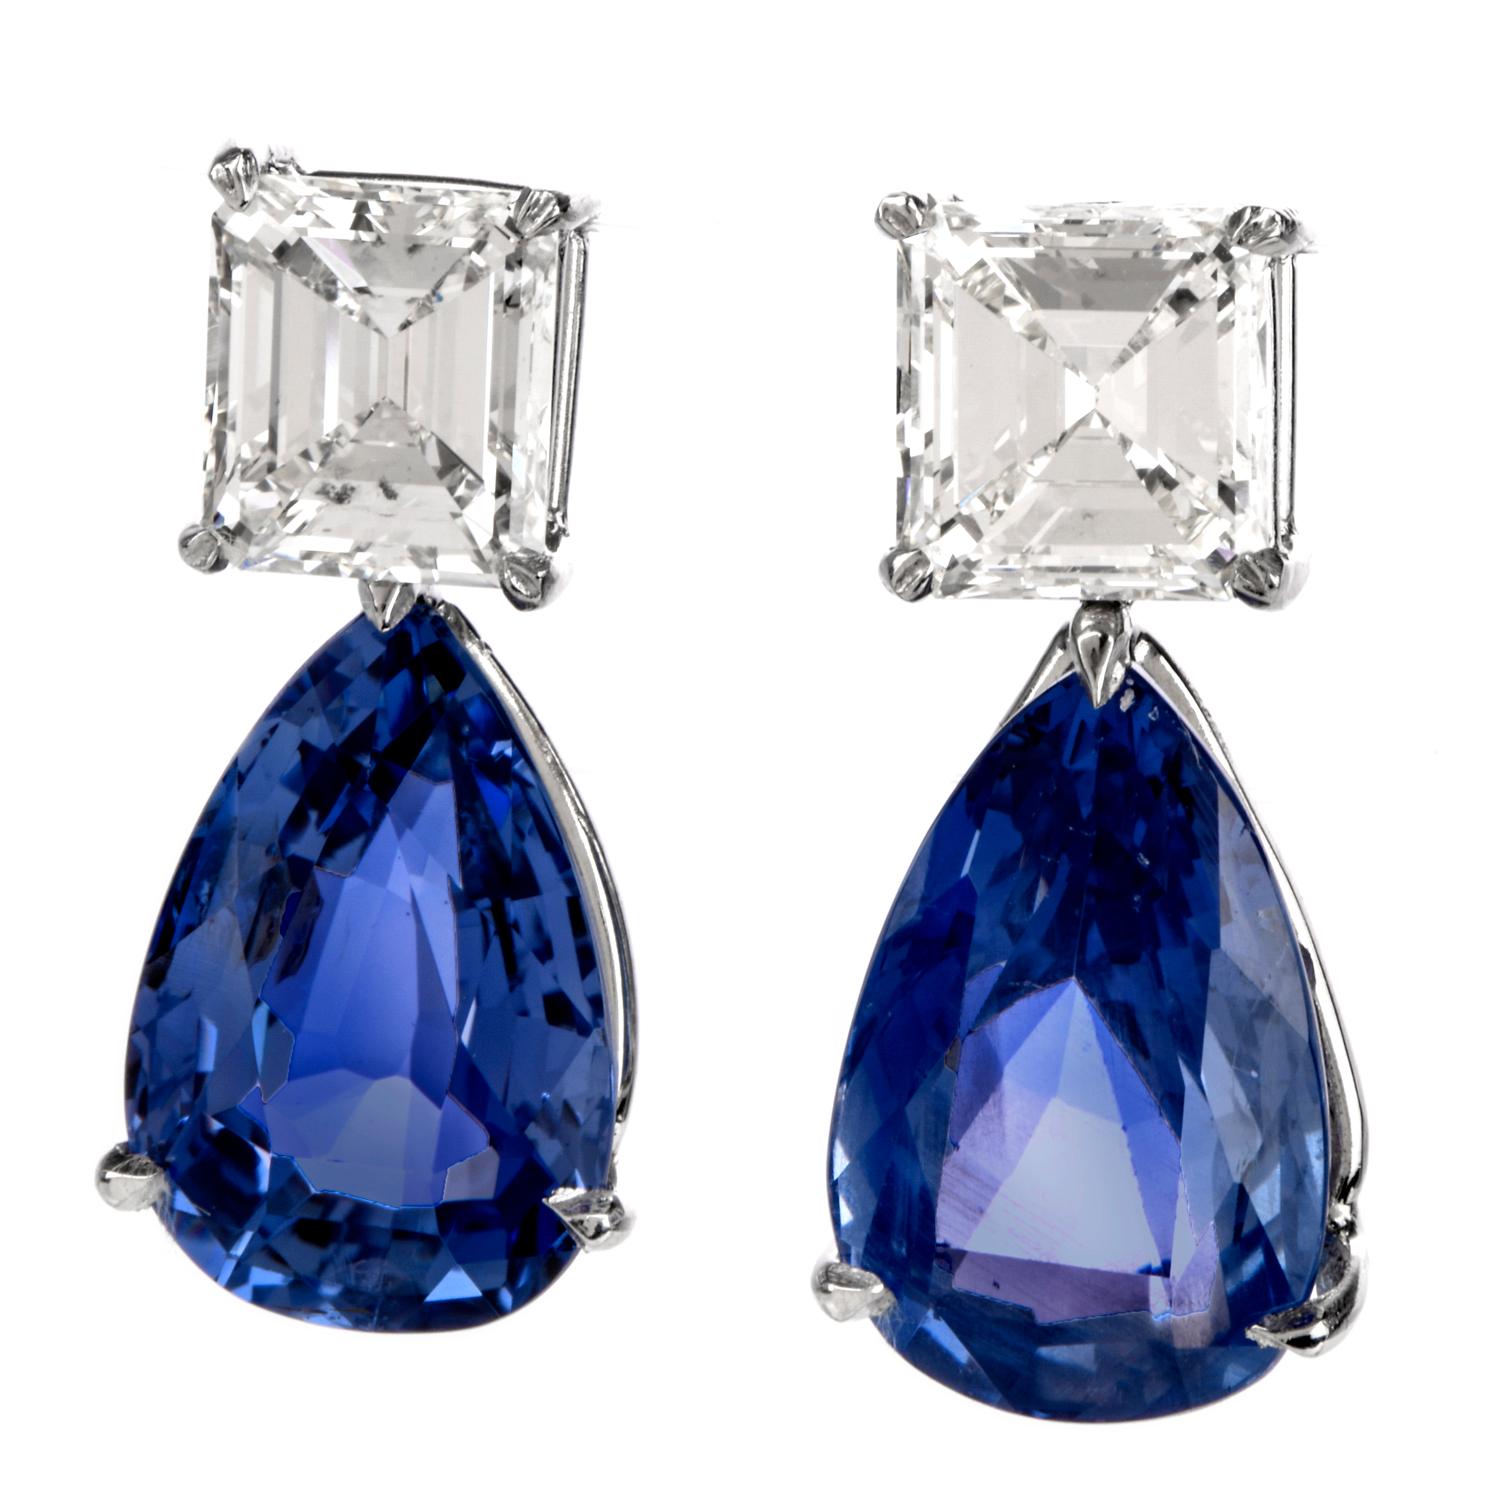 Ces magnifiques boucles d'oreilles pendantes en saphir bleu naturel et diamant sont fabriquées à la main en platine massif. Elles pèsent 10 grammes et mesurent 24 mm de long x 11 mm de large. Exposant une paire de saphirs bleus du Sri Lanka en